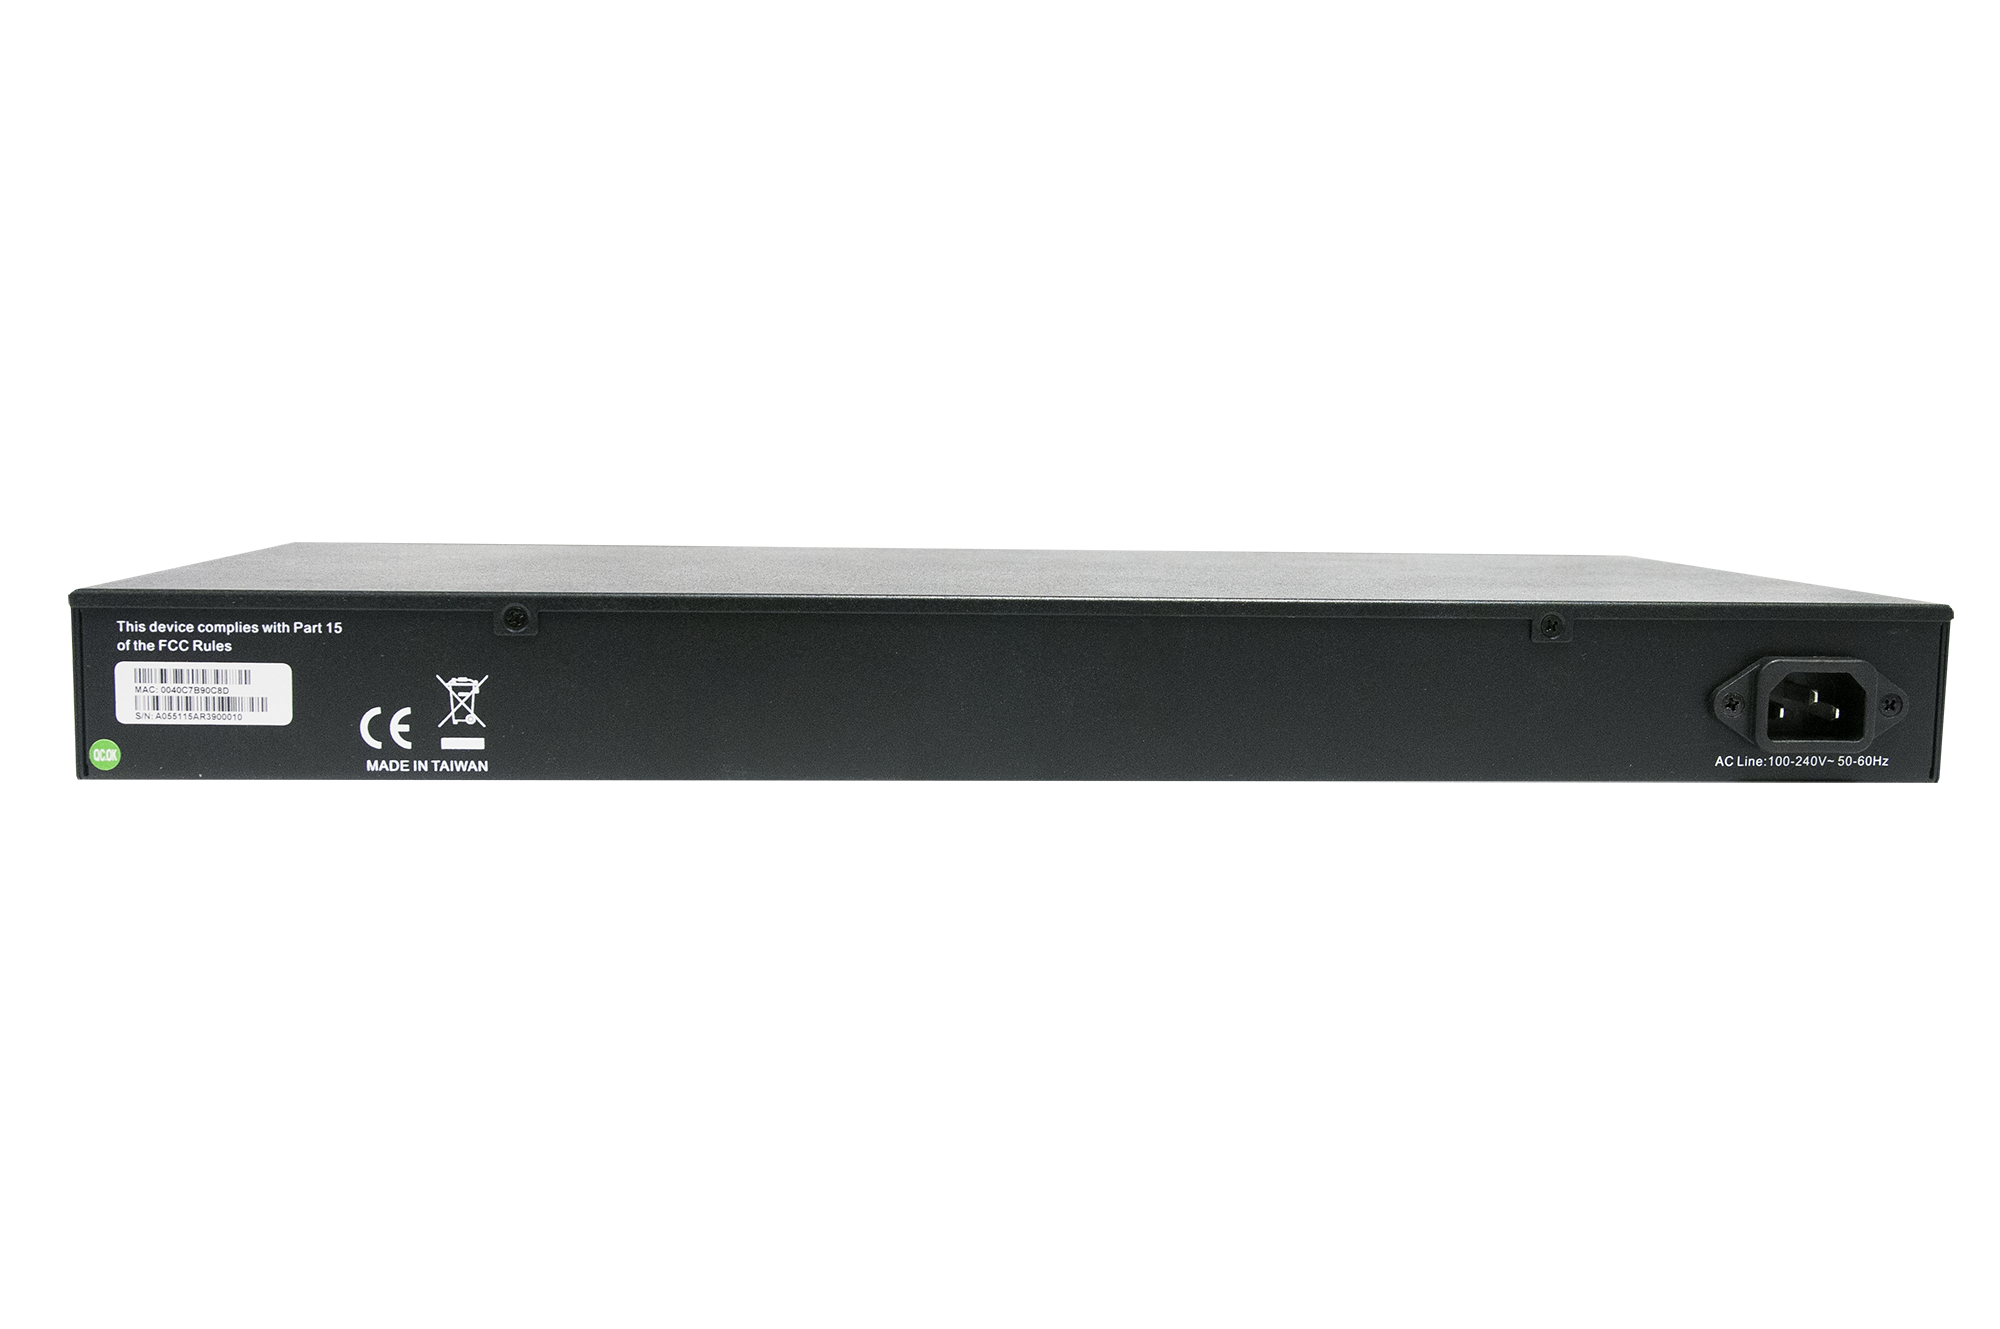 i3 International Annexxus Cortex PoE Network Switch S81 